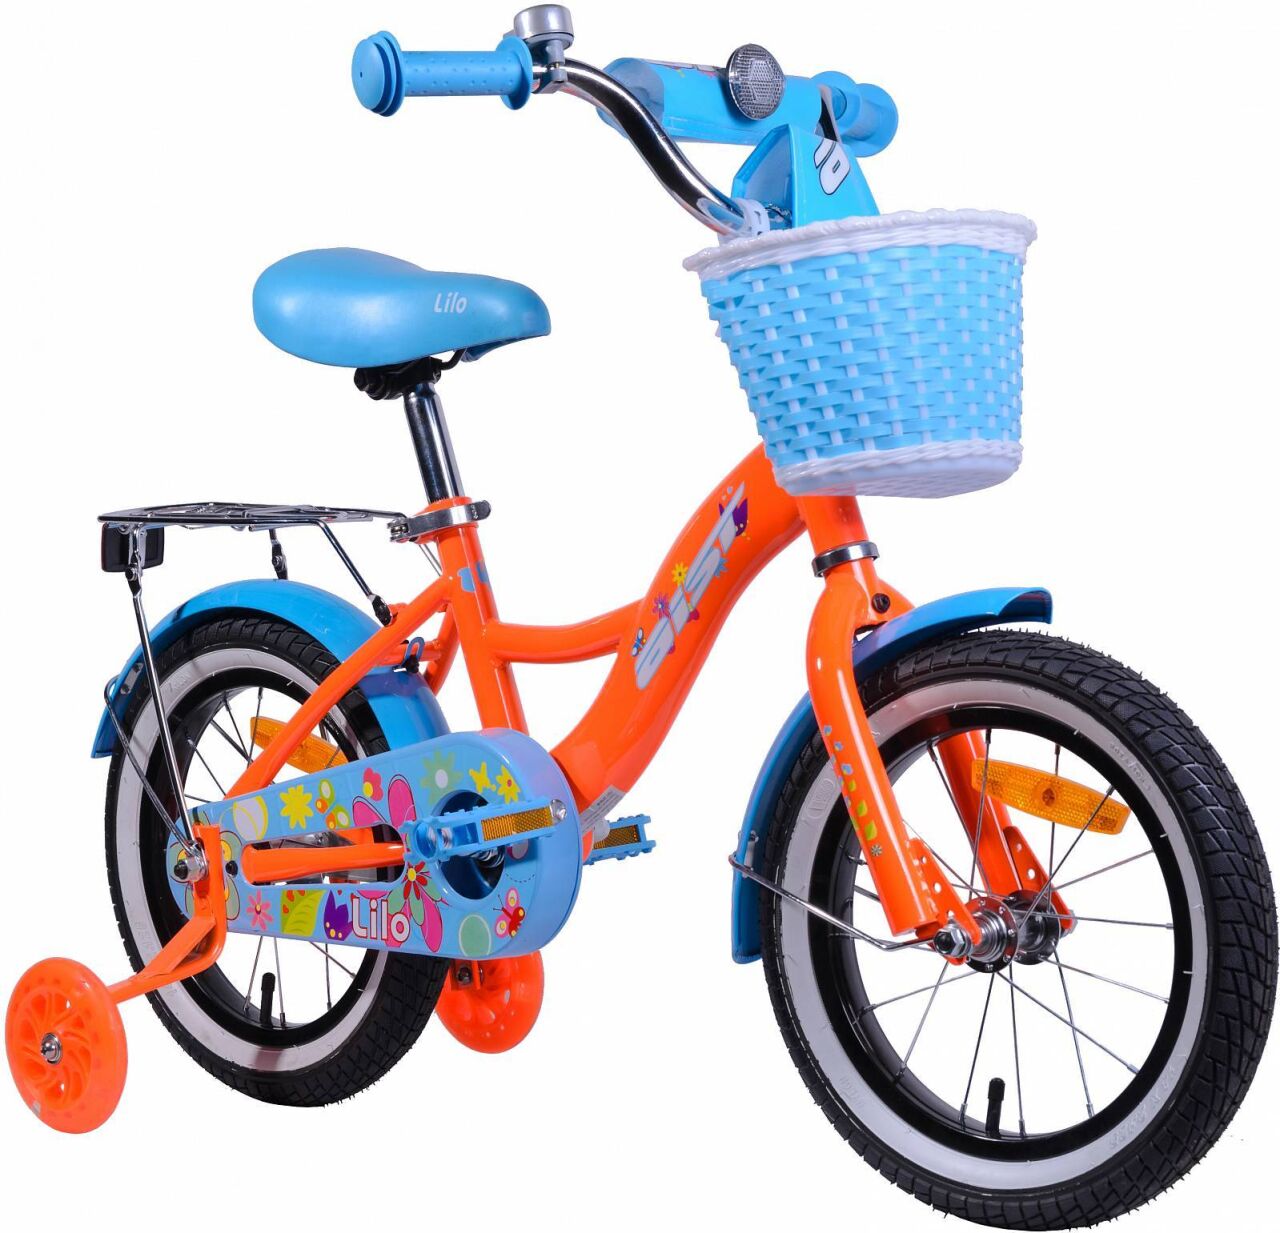 Детский велосипед Aist Lilo 14 (оранжевый/голубой, 2020)